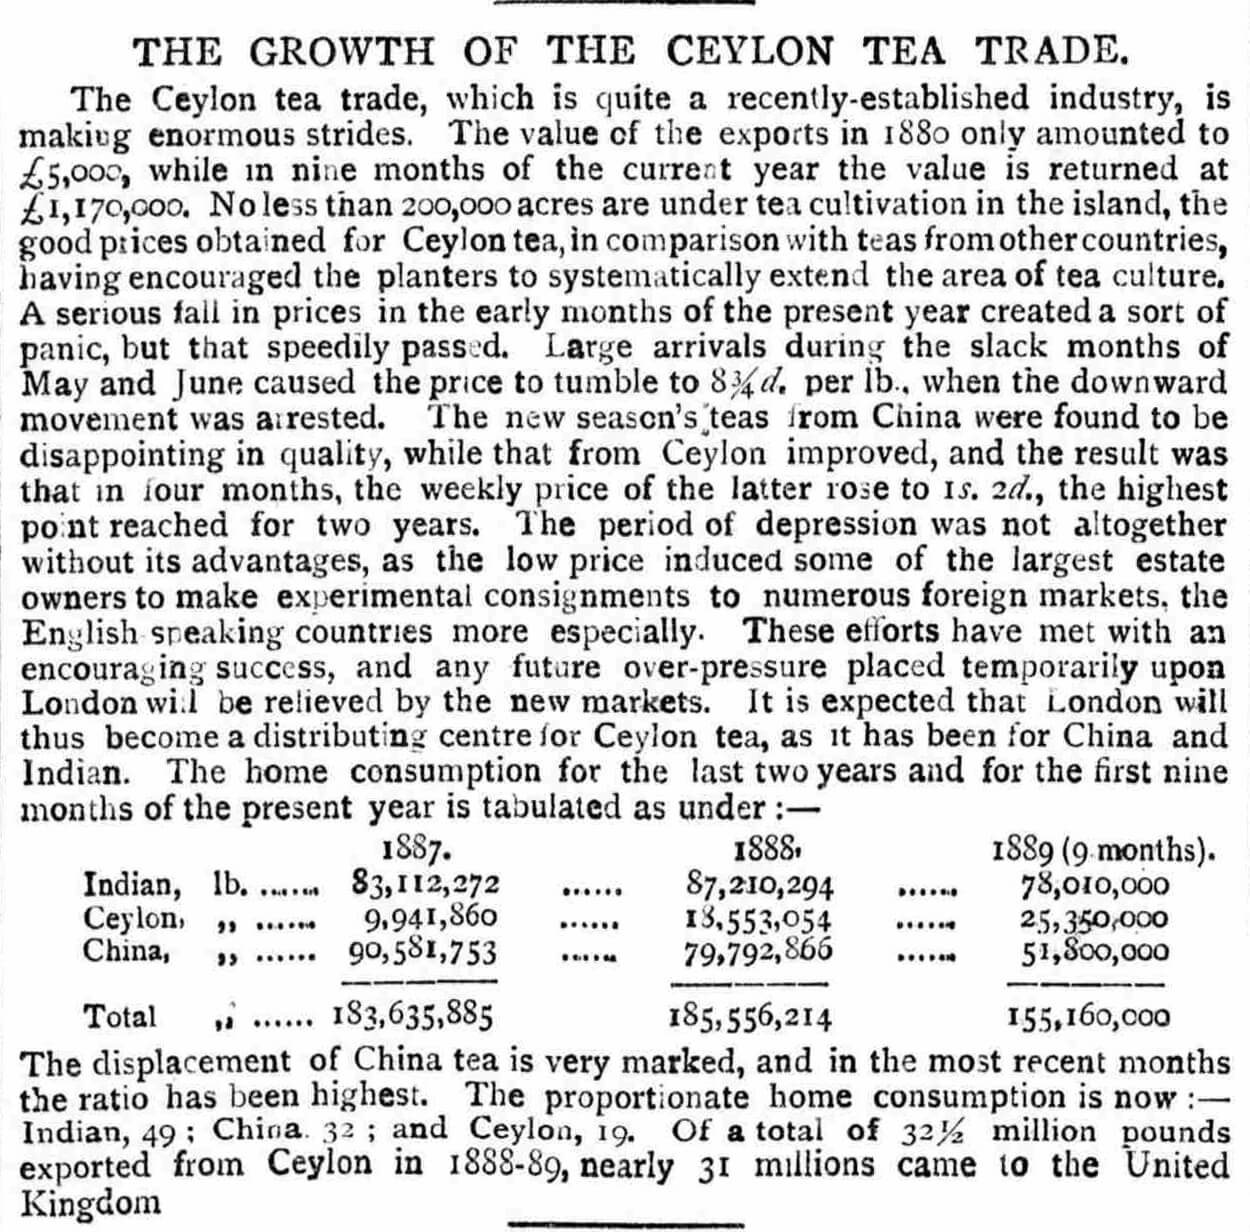 86.Growth of Ceylon Tea Trade